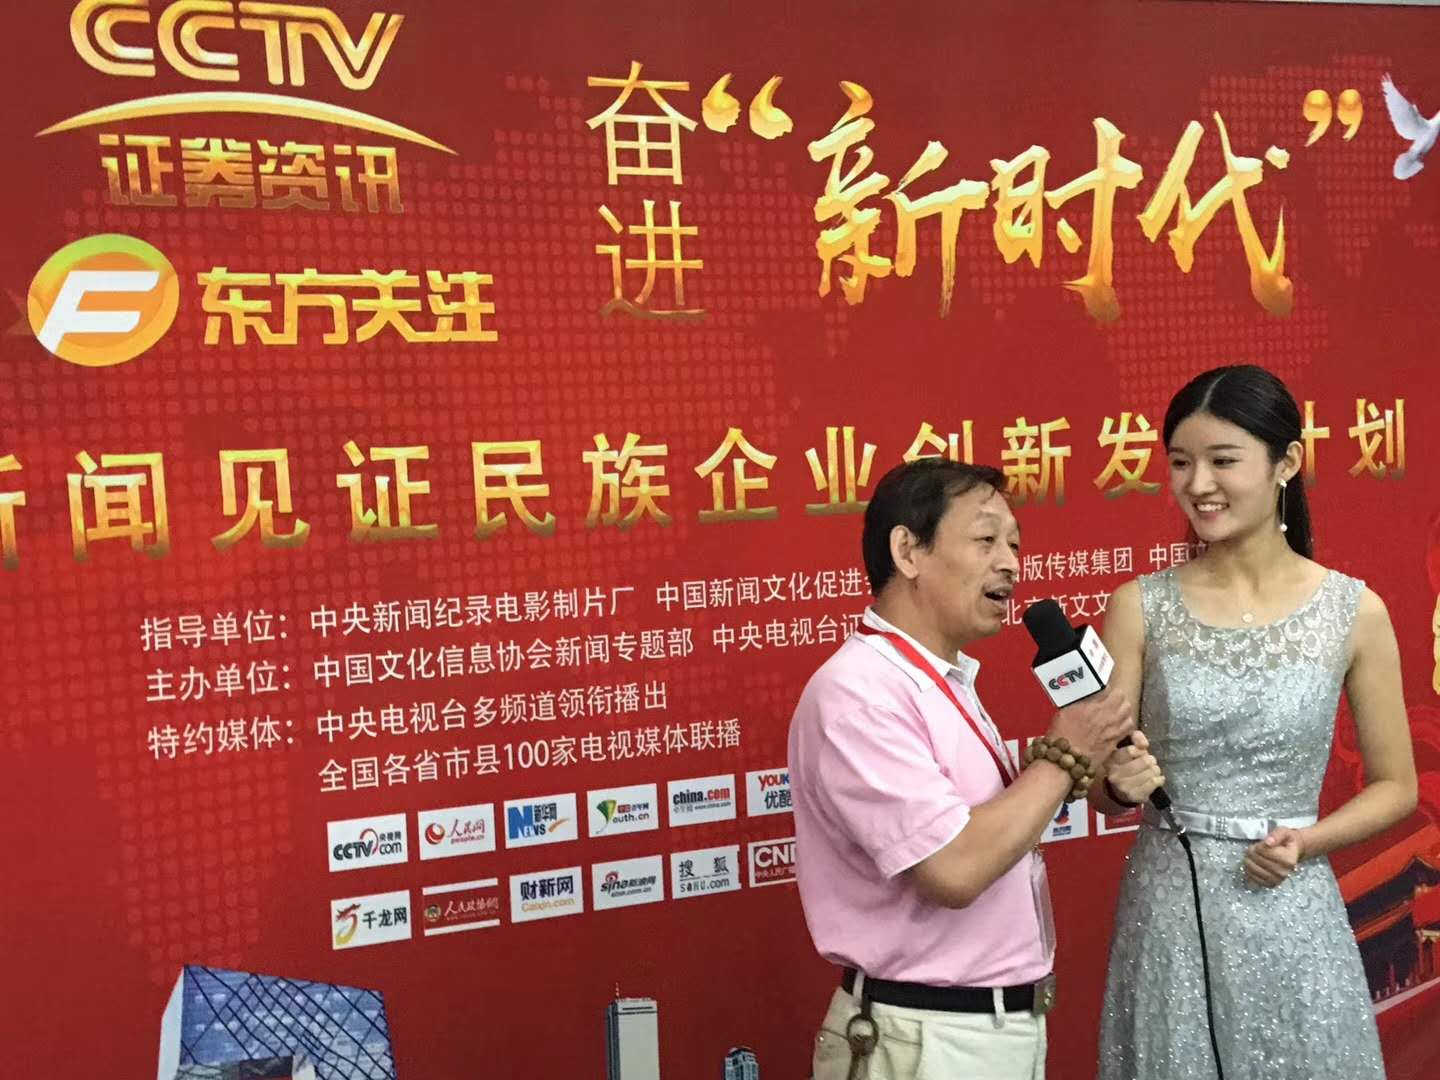 章志斌老師應邀“CCTV證券頻道”于蘇州大學采訪